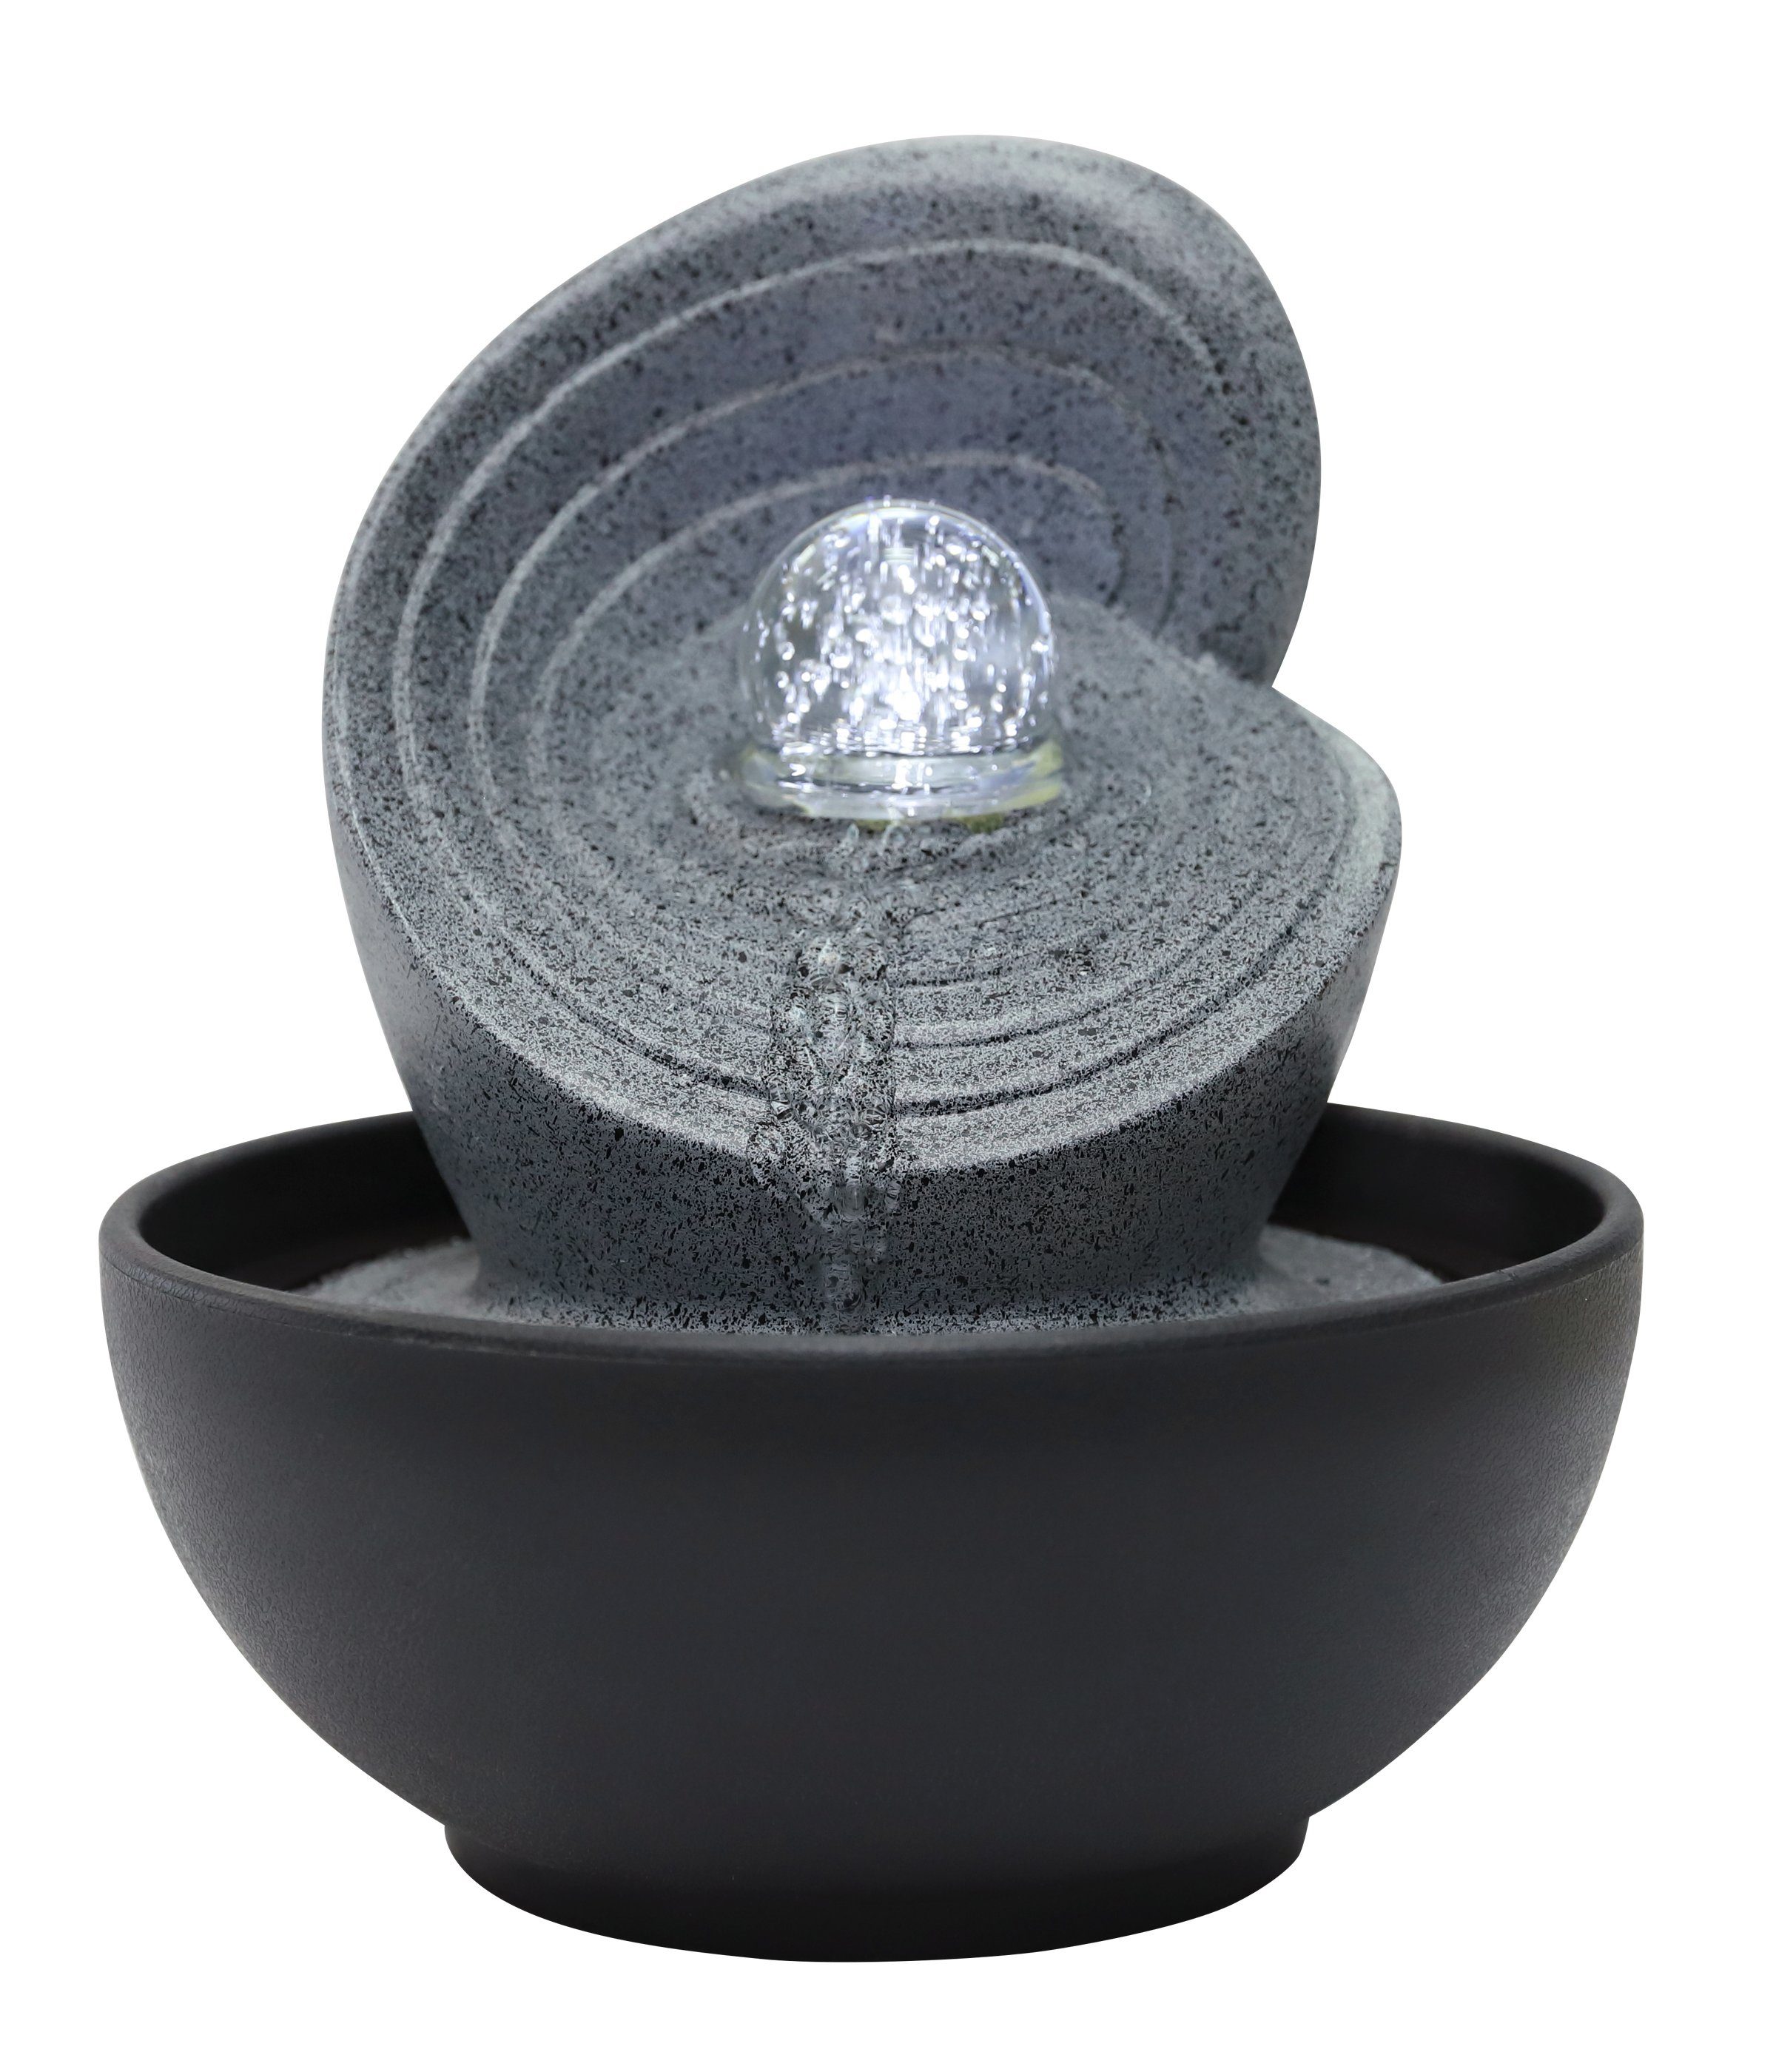 Dehner Zimmerbrunnen Olua mit LED kaltweiß, 23 x 26 x 23 cm, Polyresin, 23 cm Breite, Beruhigendes Wasserspiel, LED Beleuchtung, robuster Kunststein